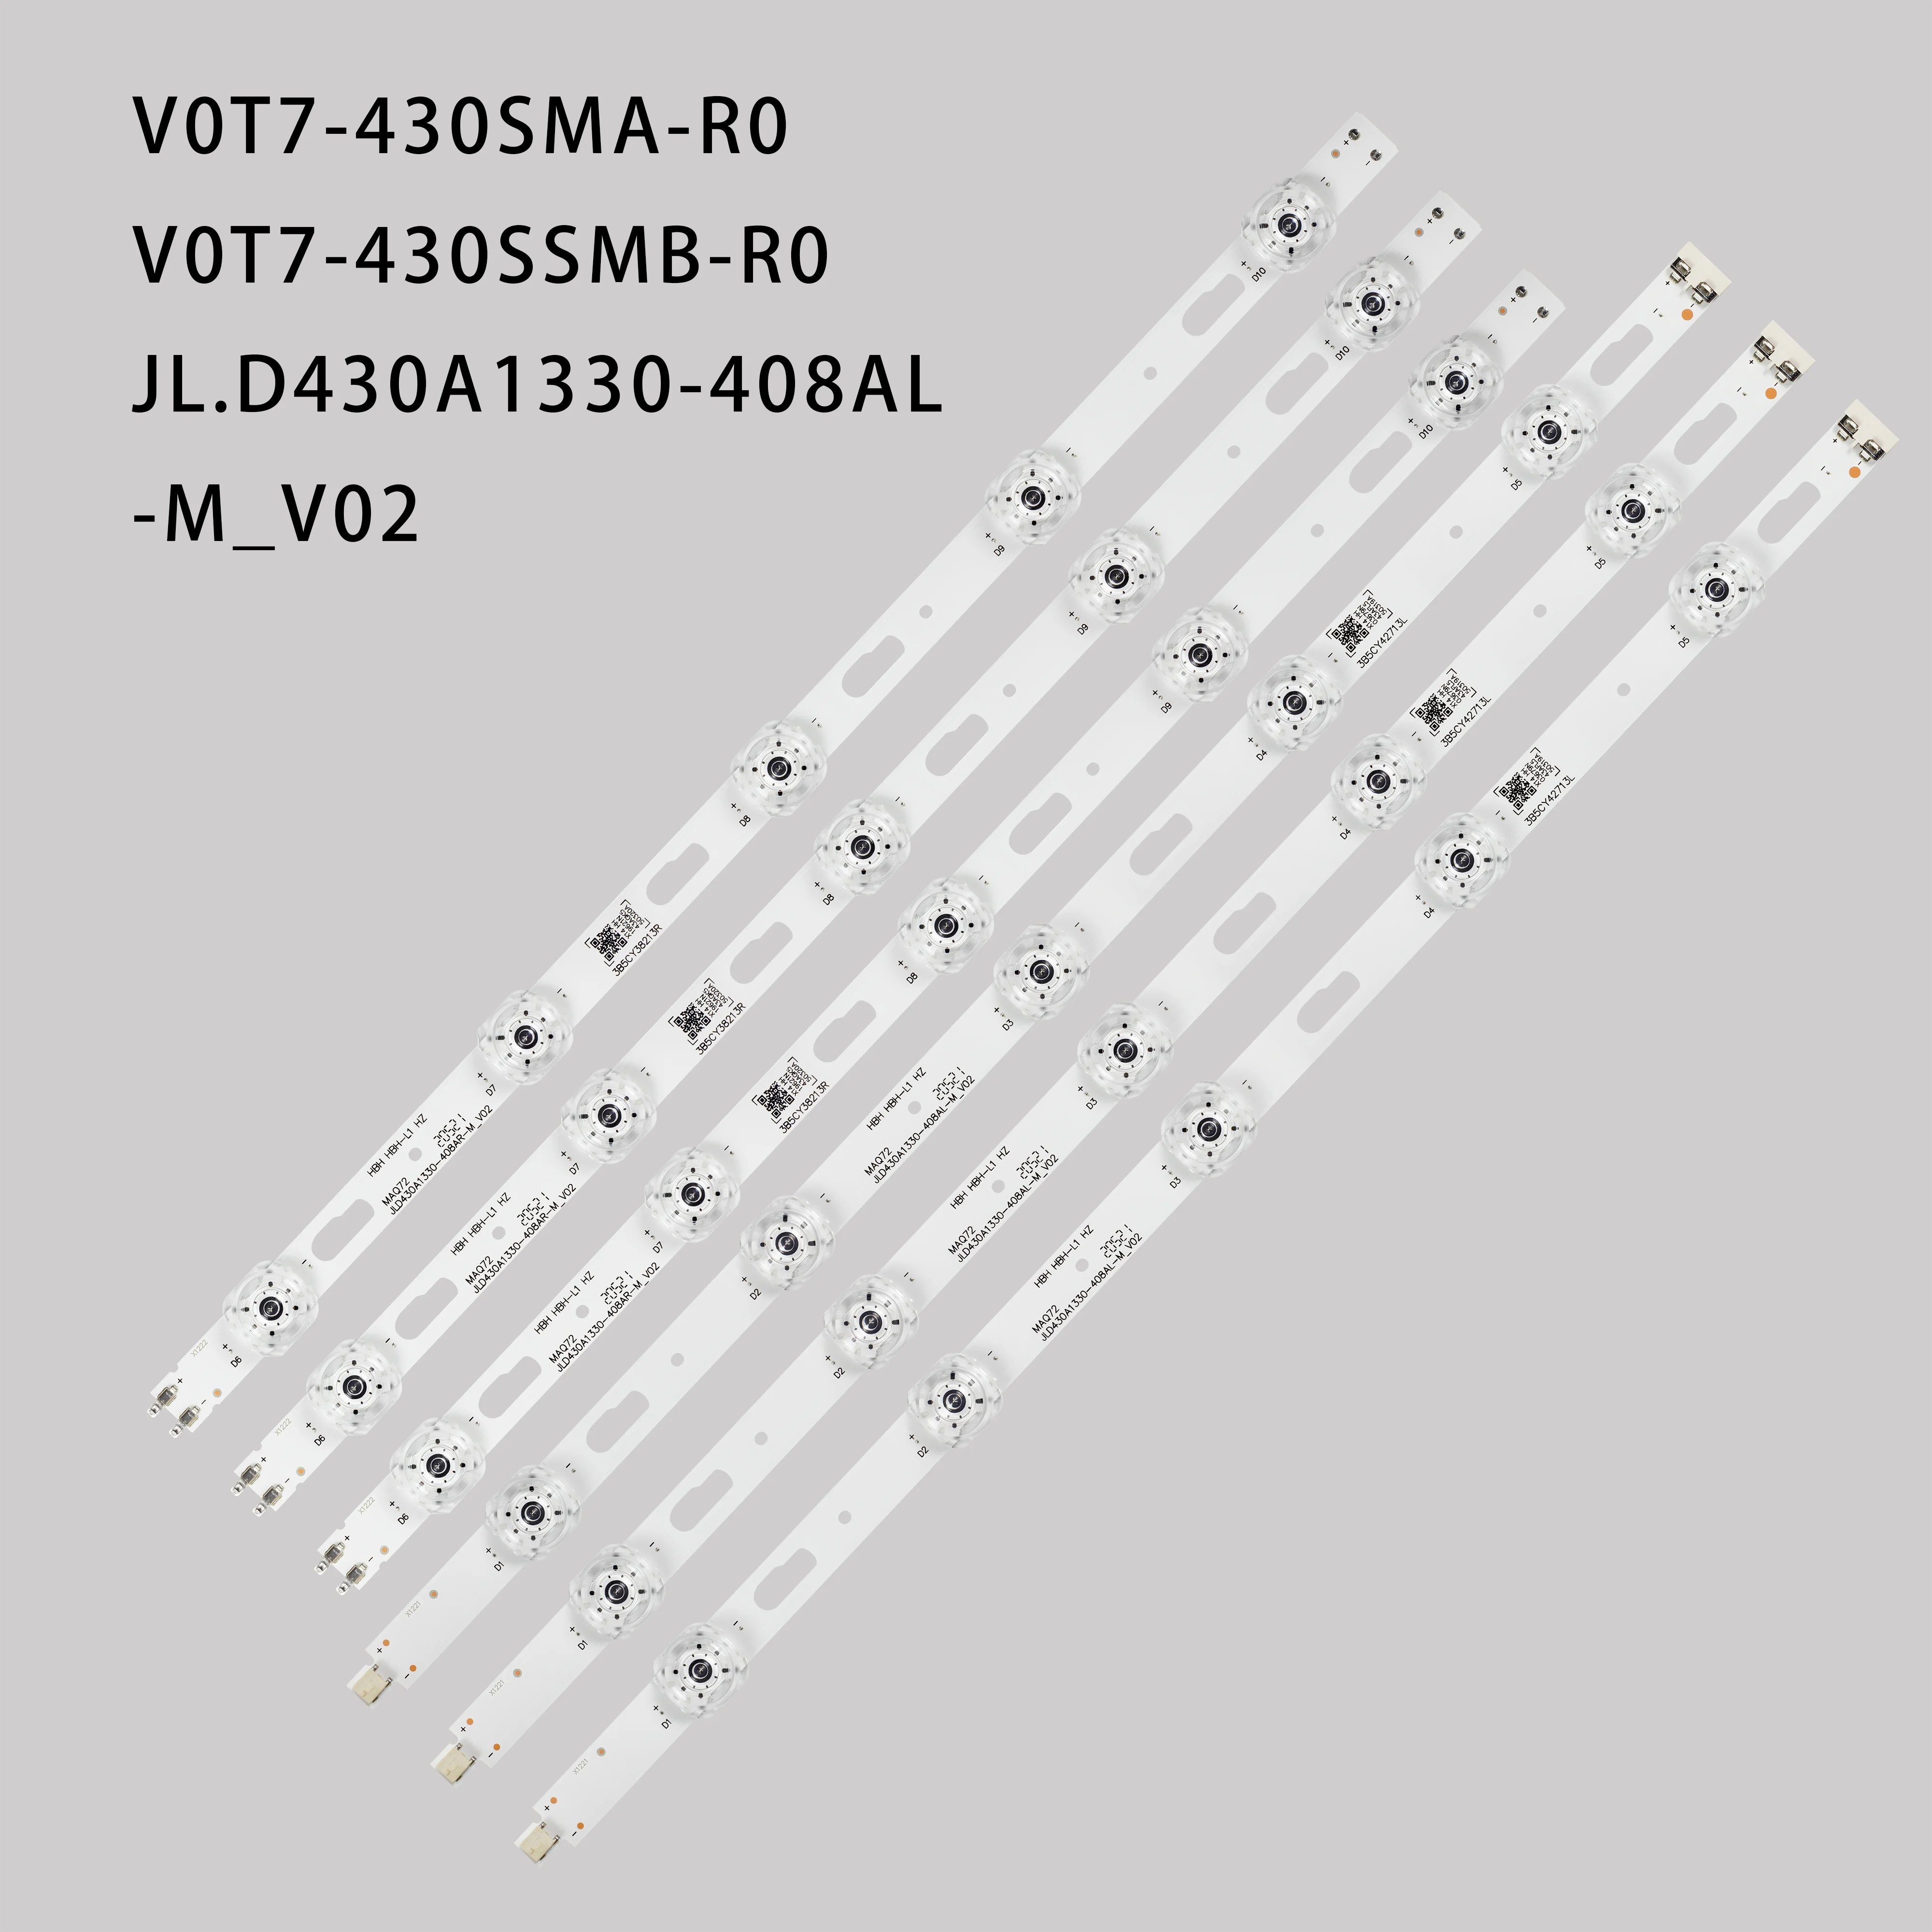 

LED Strip V0T7-430SMA-R0 for UE43TU7070 UE43TU7172 UE43TU8070 UE43TU8072 UE43TU7090 GT043HGHV1H GE043HGER1V V0T7-430SMB